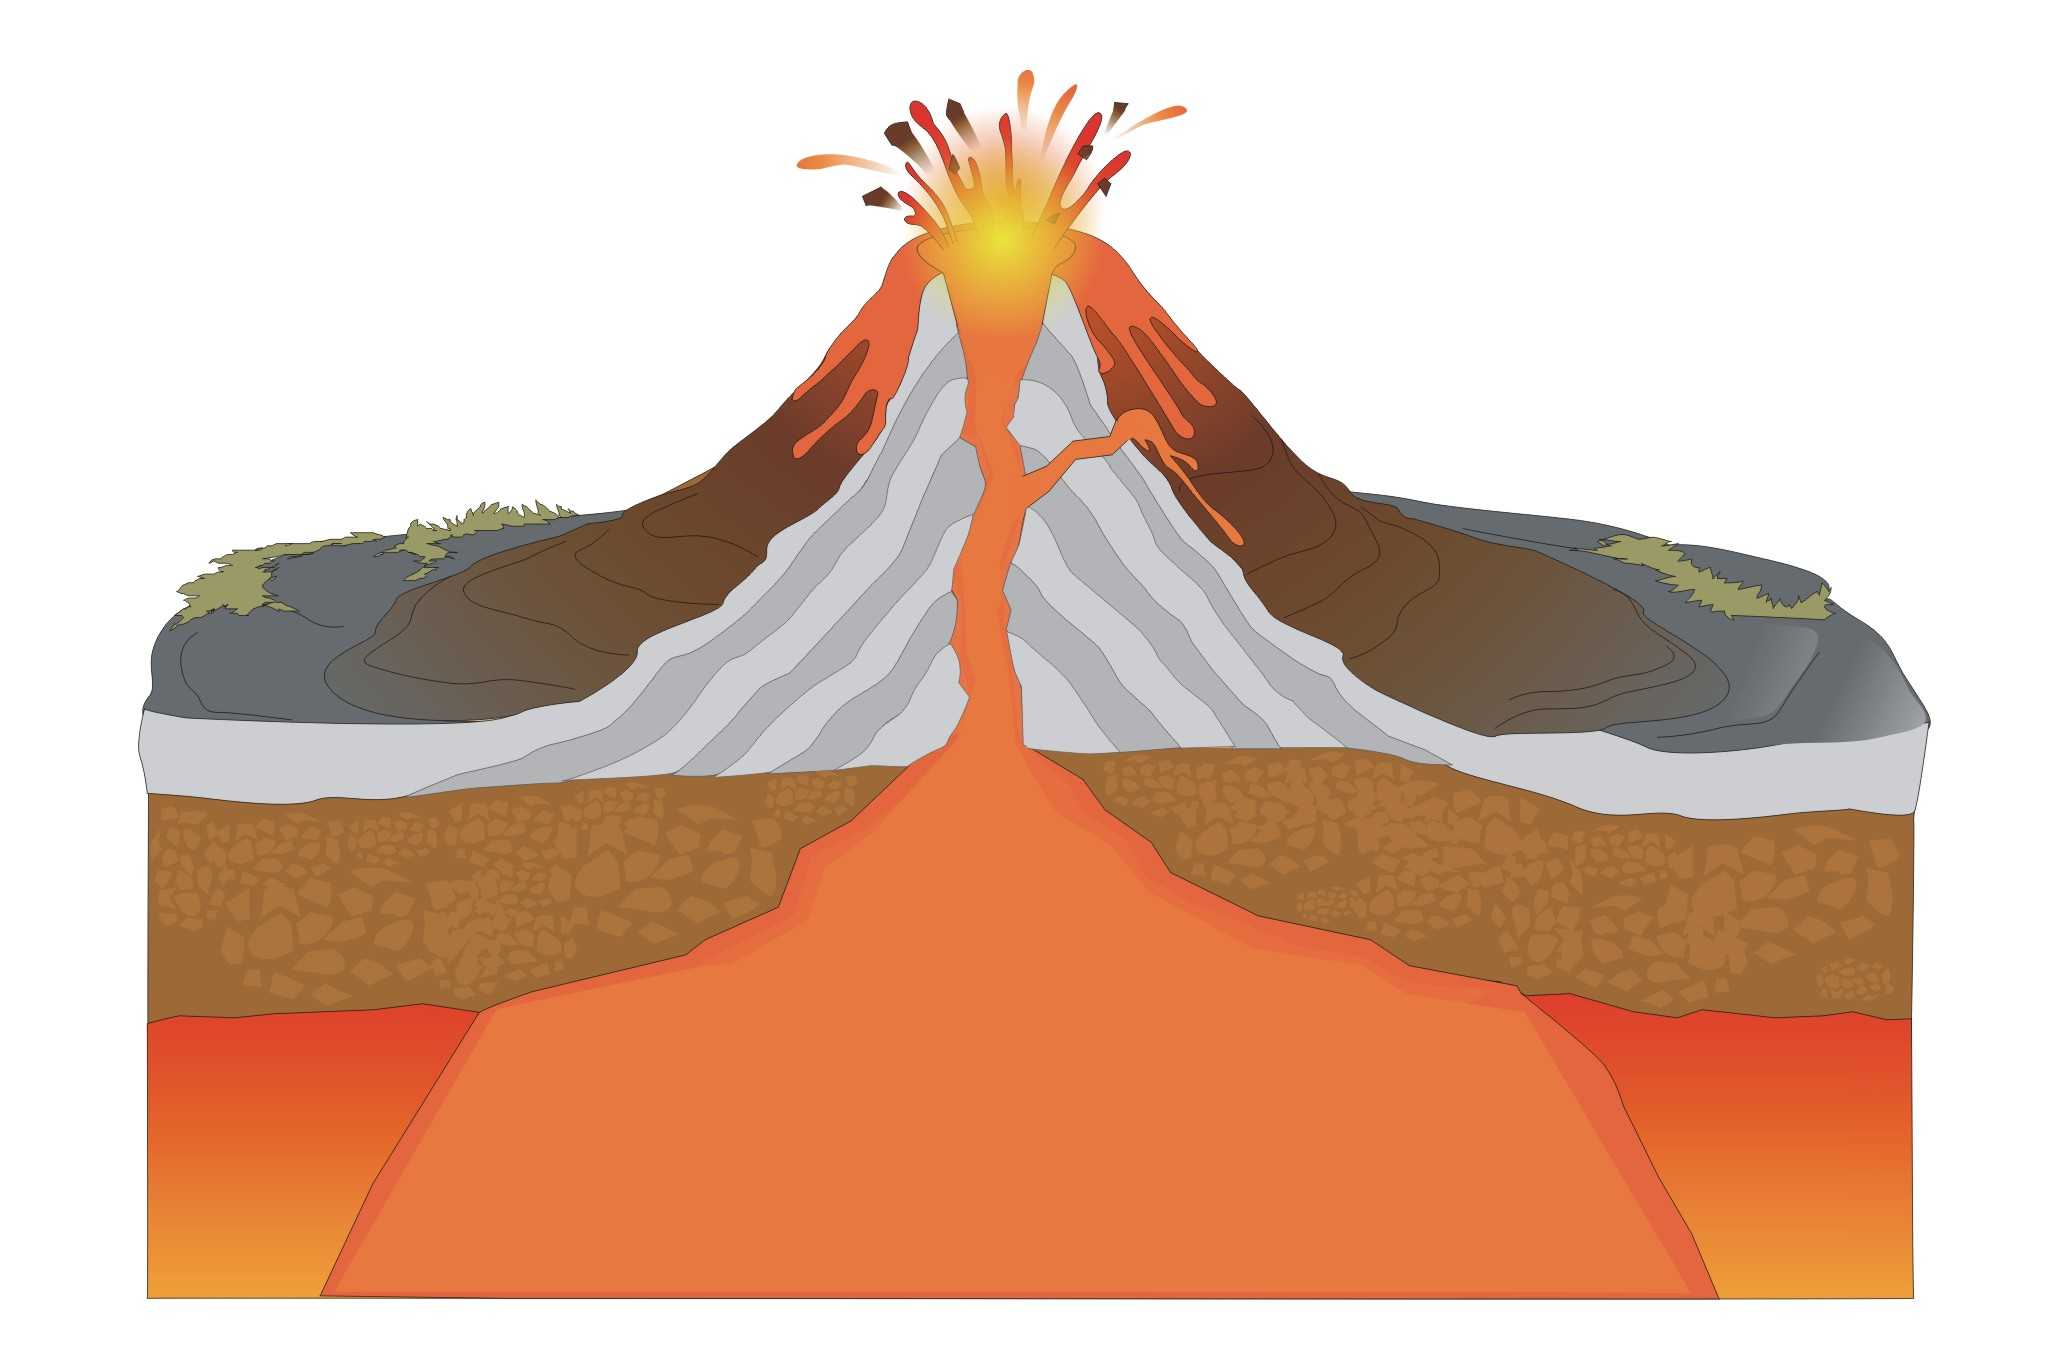 Образование и строение вулканов :: syl.ru